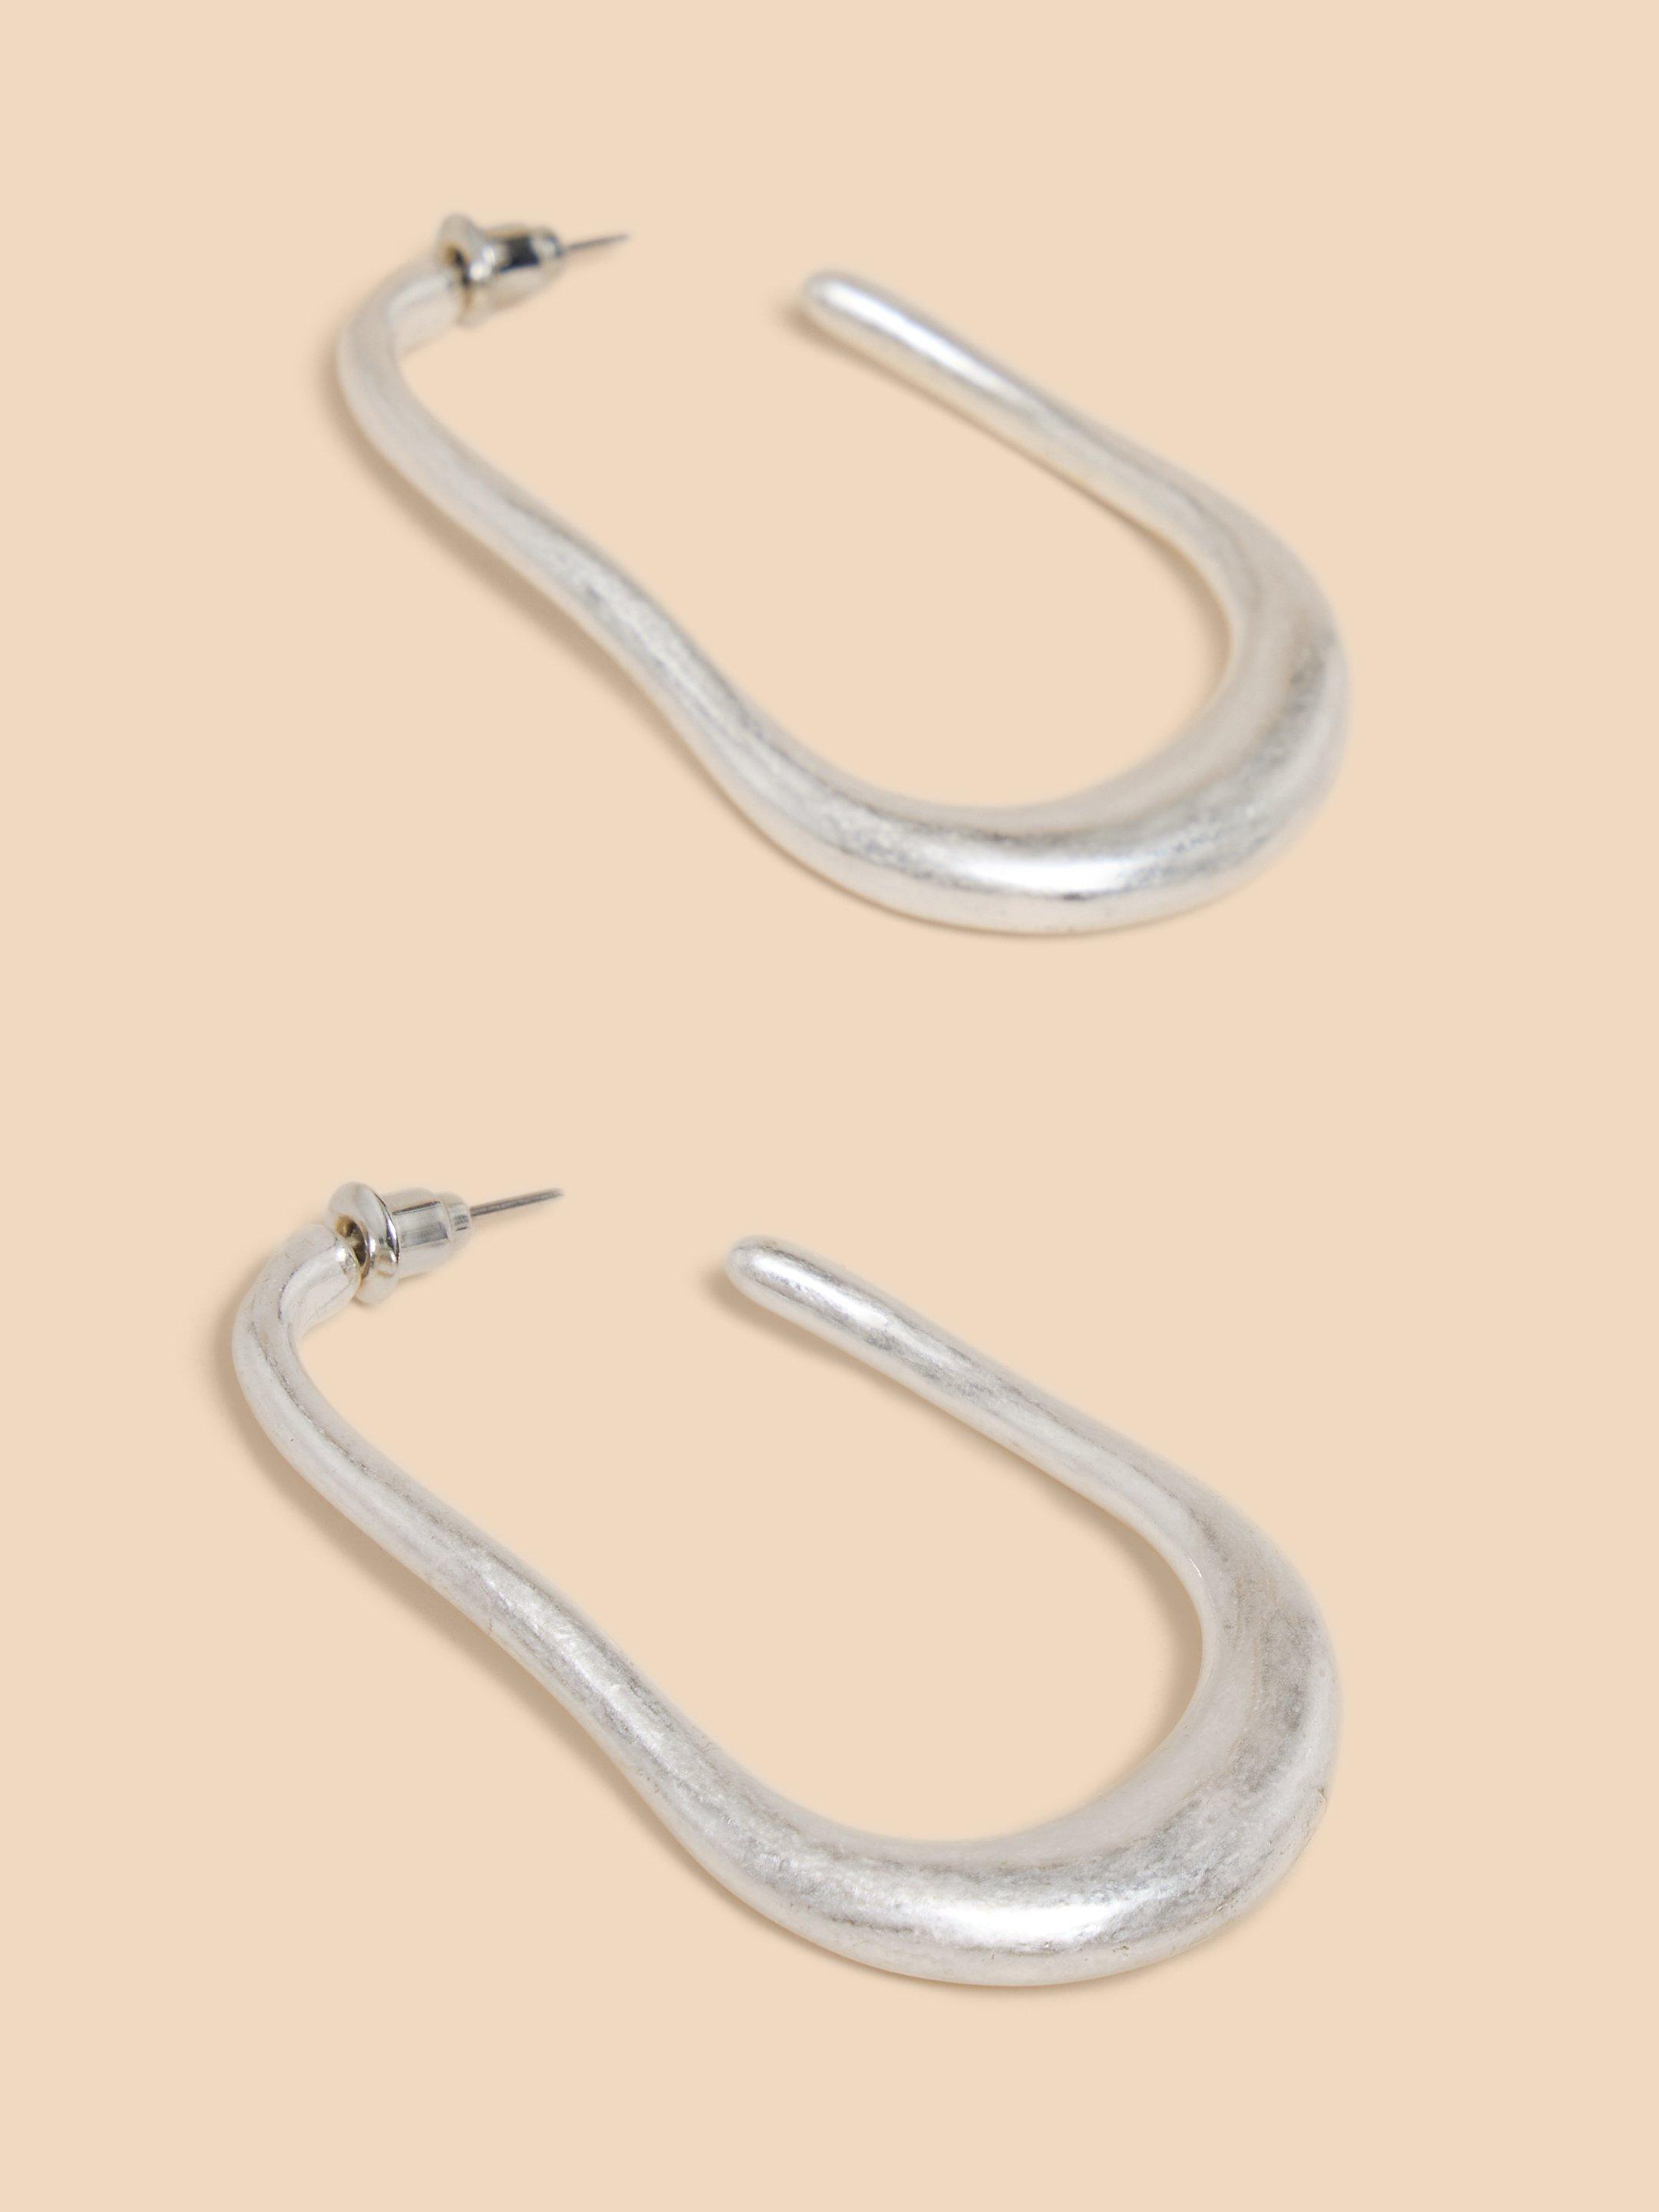 Amy Abstract Hoop Earrings in SLV TN MET - undefined